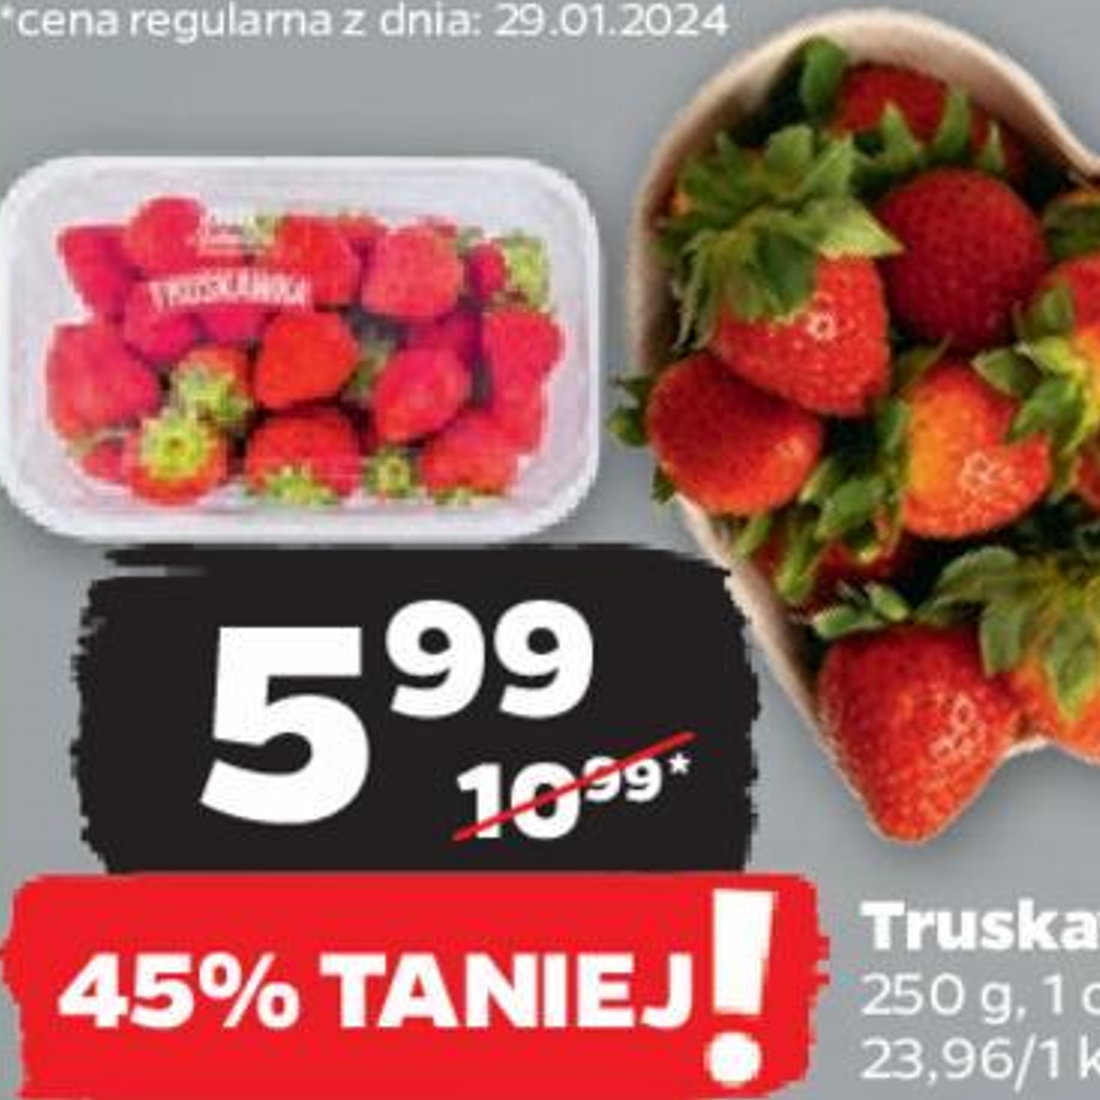 Netto serwuje słodkie promocje: truskawki w cenach, które rozpłyną się na języku!